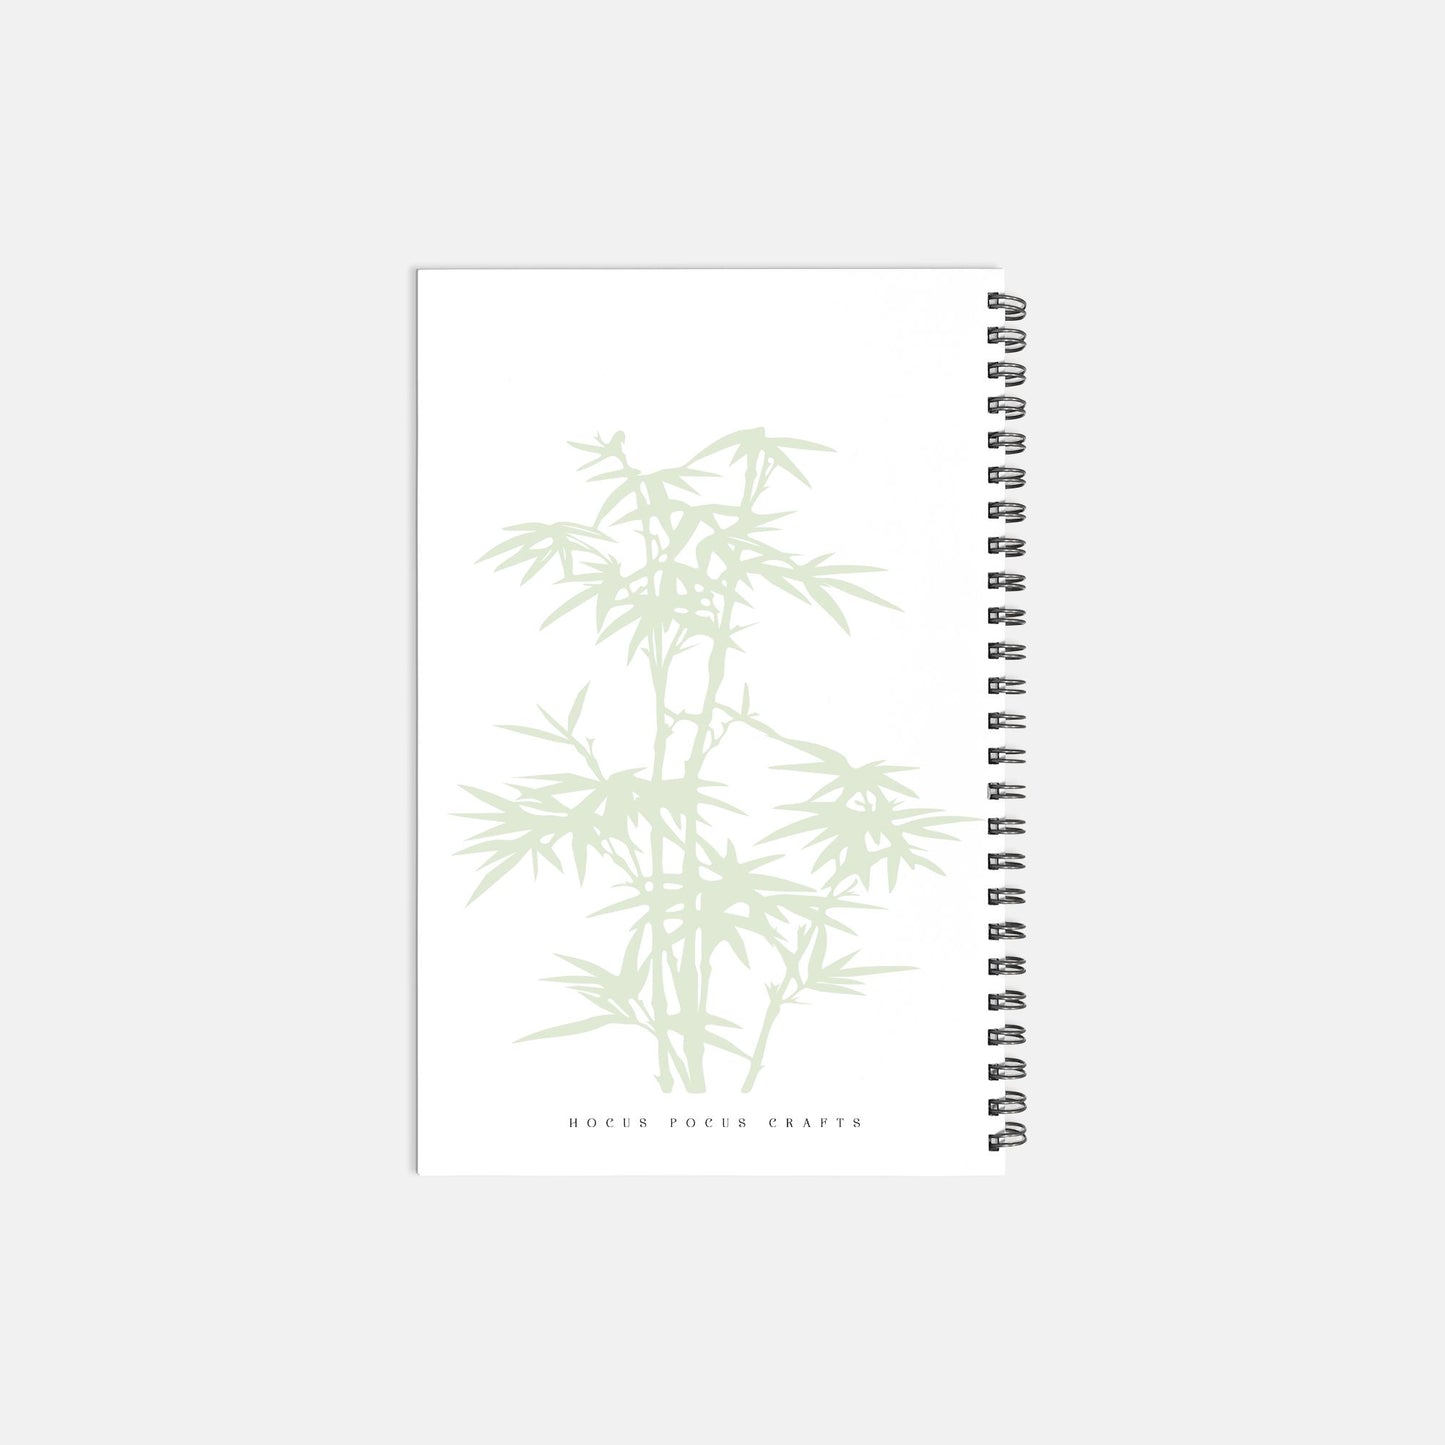 Zen Waterfall Journal notebook Hardcover Spiral 5.5 x 8.5